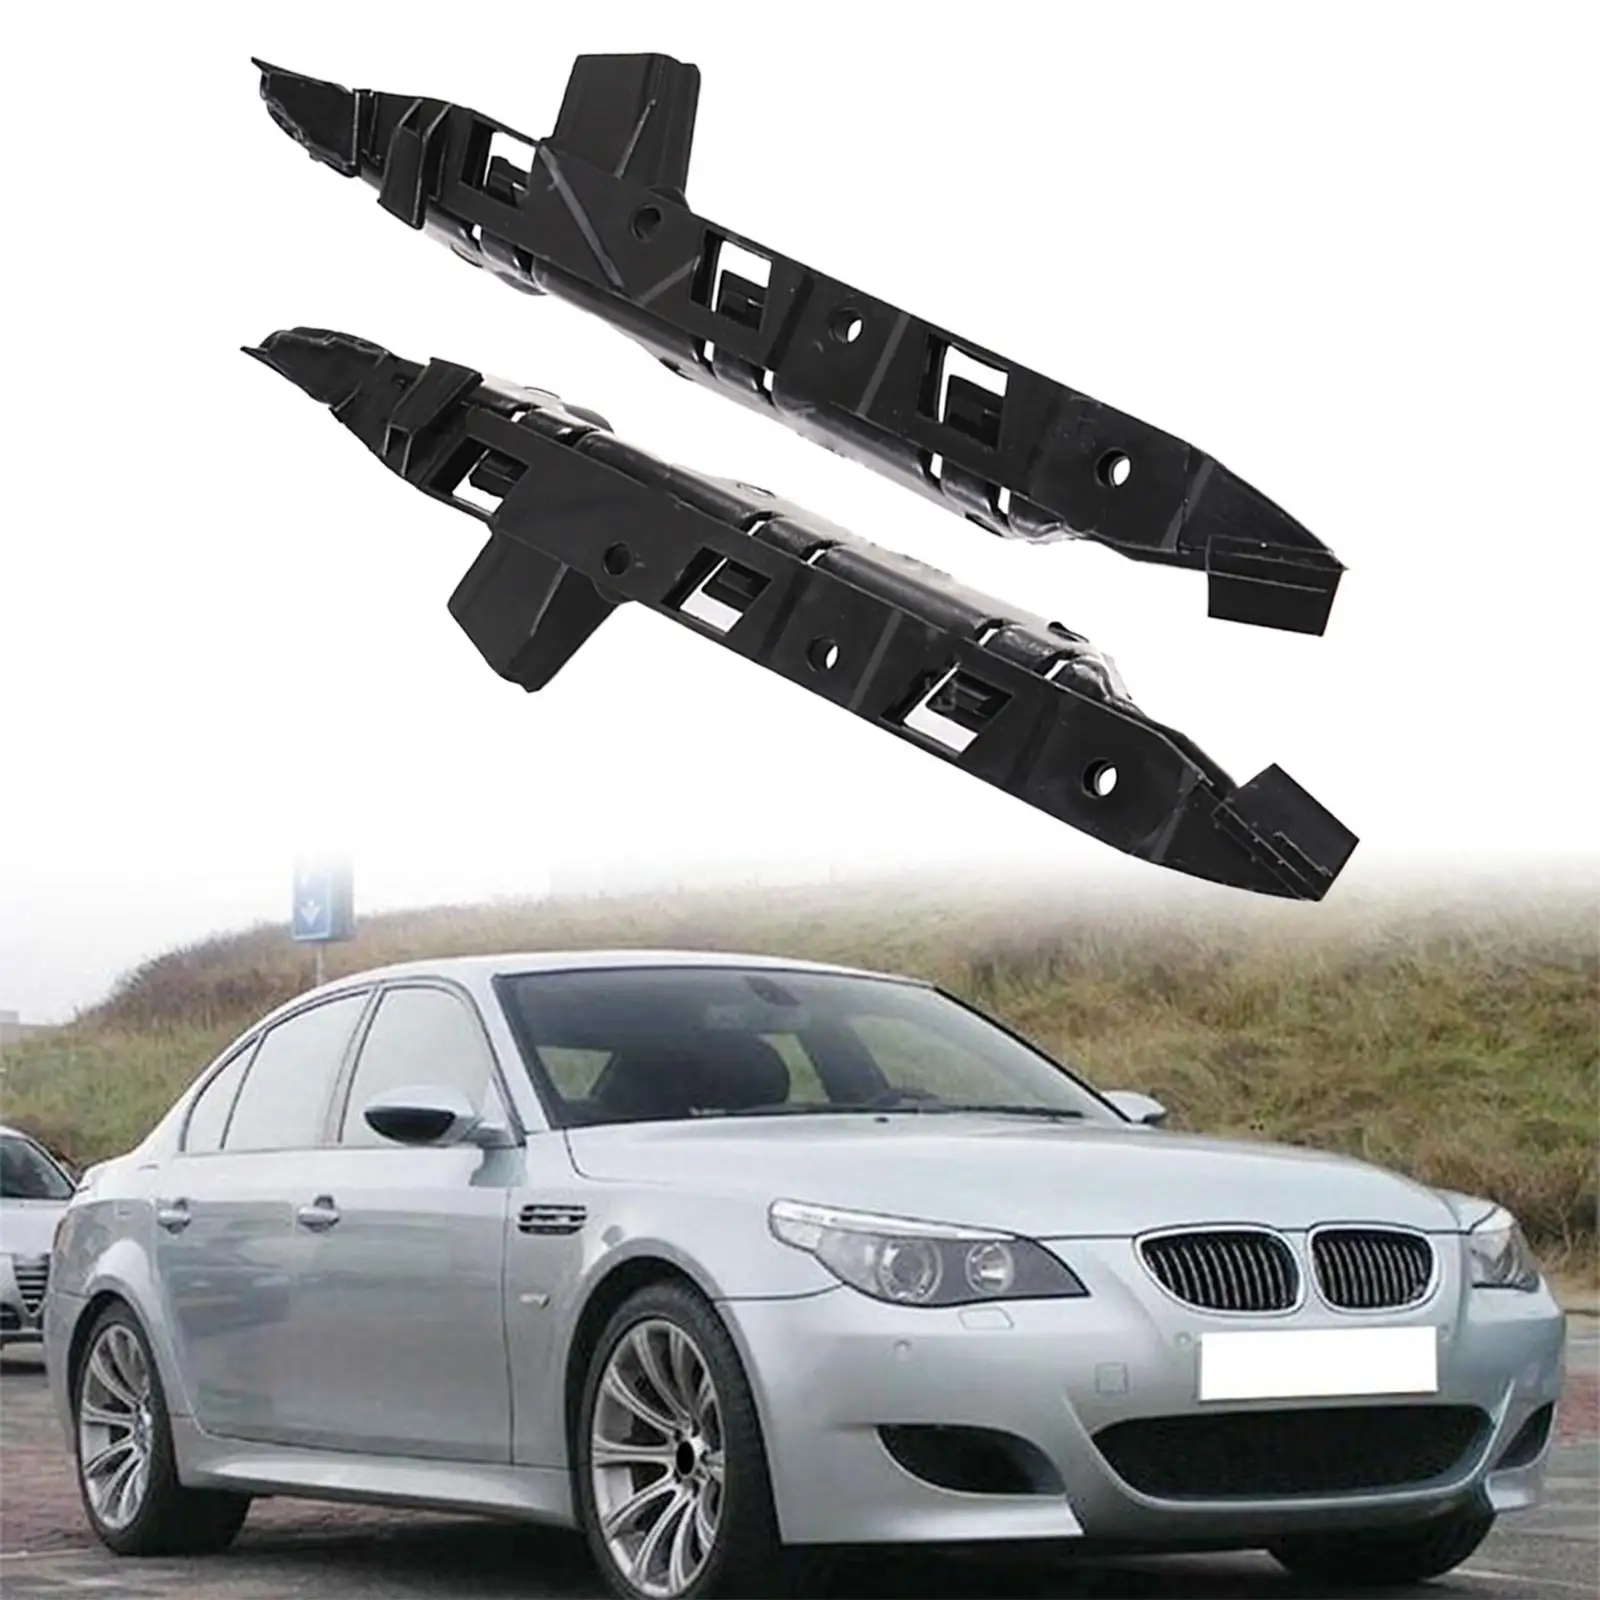 Front Bumper Bracket Holder Cover Guide Piece Car Accessory for BMW 5 Series E60 E61 528i Xdrive 550i 528Xi 530i